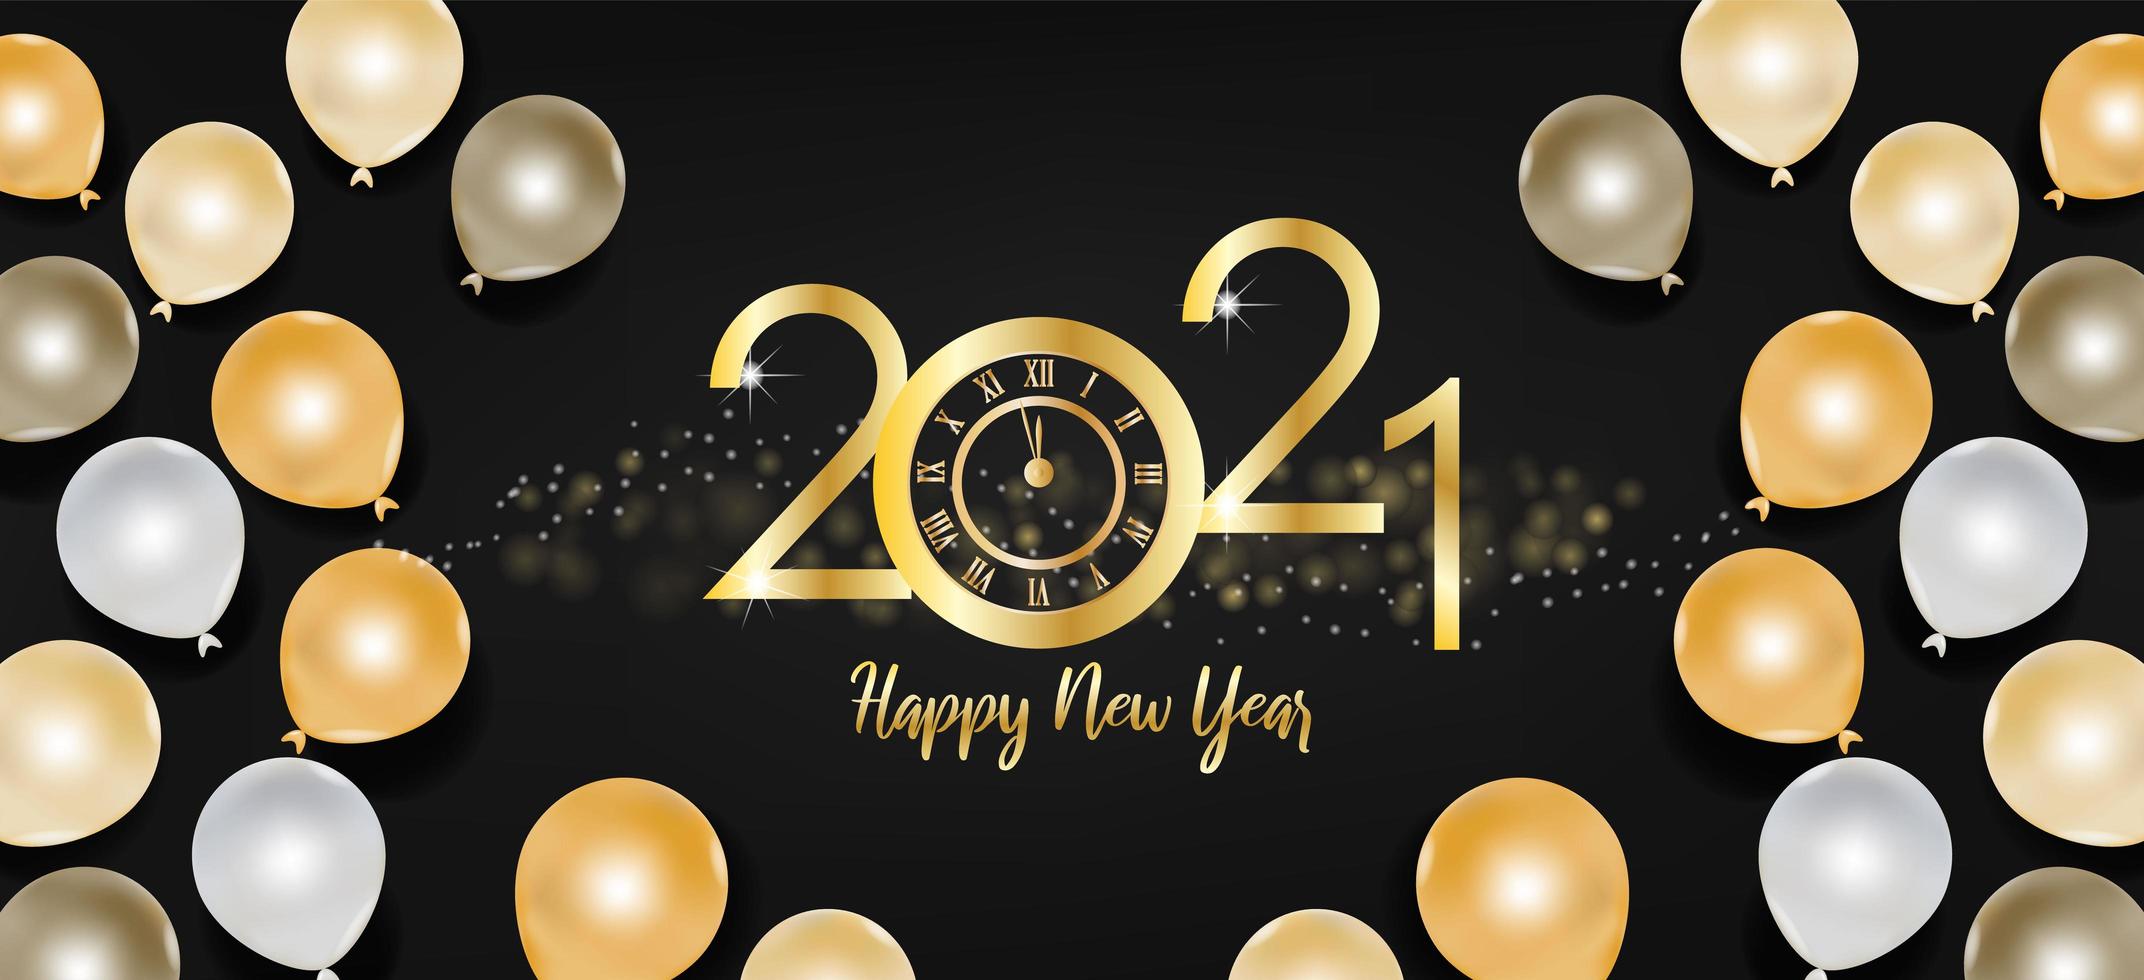 texto de feliz ano novo 2021 e balões dourados e pretos vetor